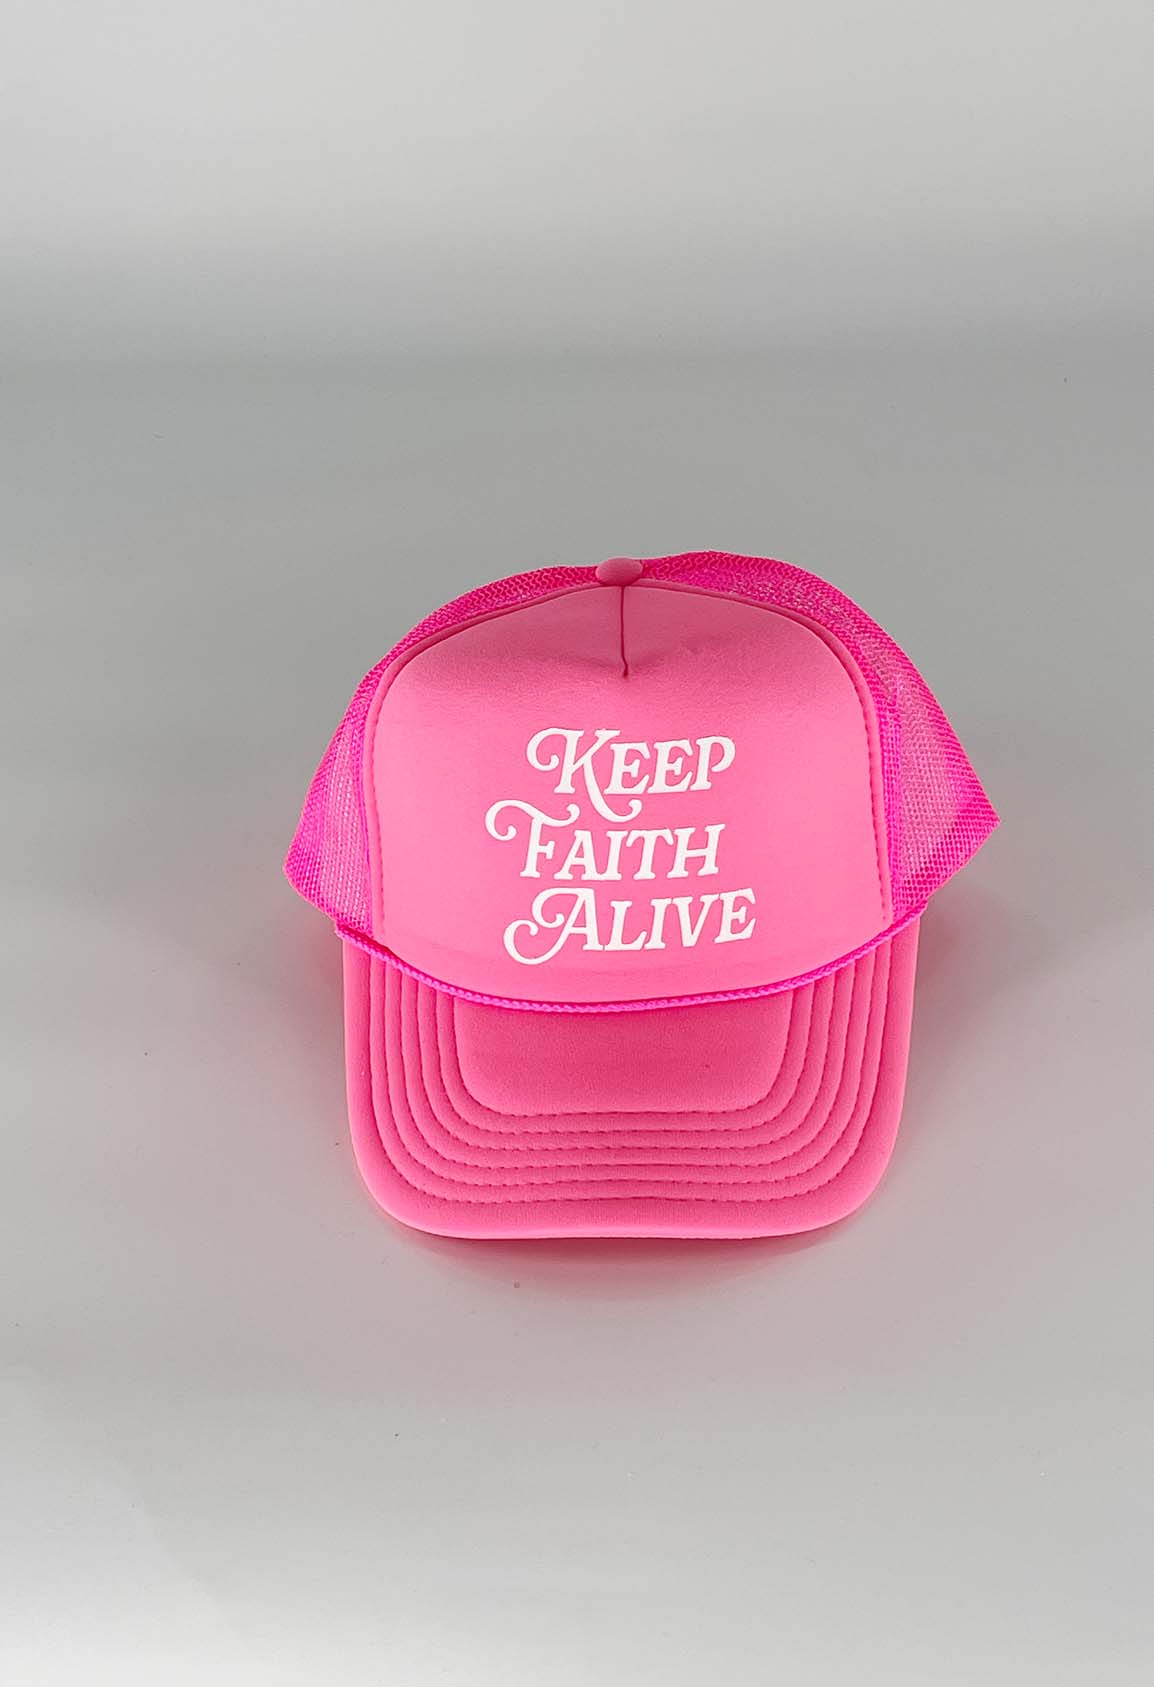 FrshFaith: Keep Faith Alive. Hope is in the Lord Jesus Christ. Keep Faith Alive.